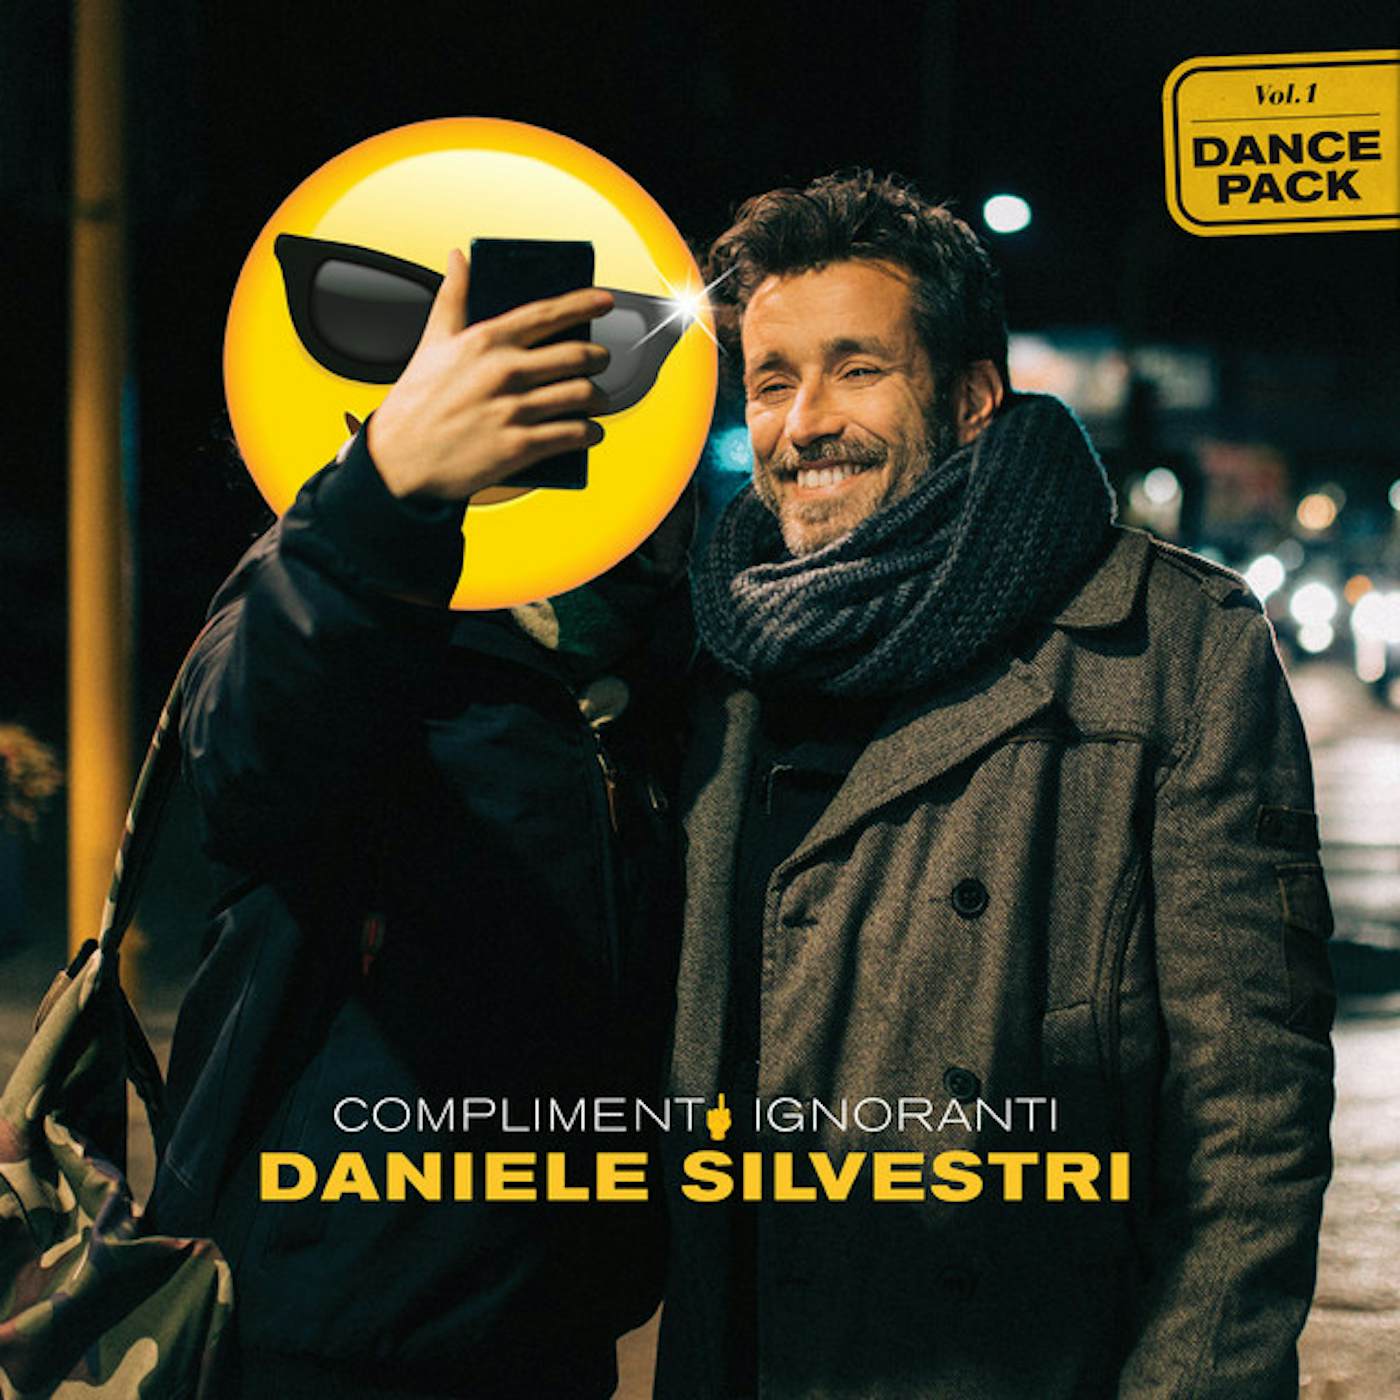 Daniele Silvestri Complimenti ignoranti Vinyl Record